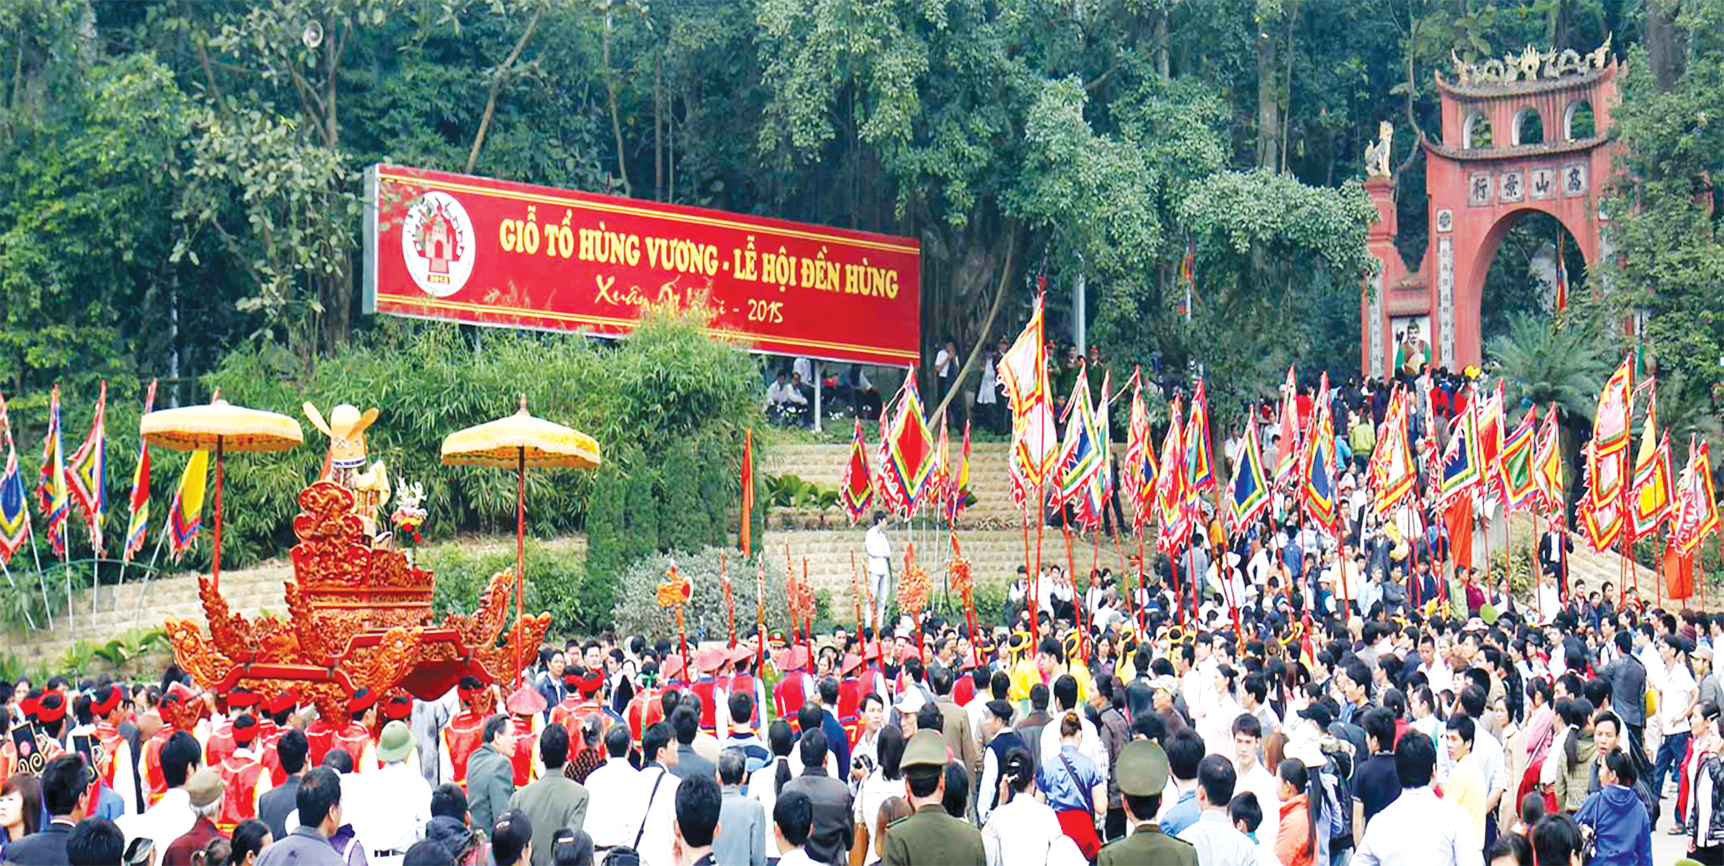 Di sản tín ngưỡng thờ cúng Hùng Vương và Lễ hội Đền Hùng - saigonseatravel.com